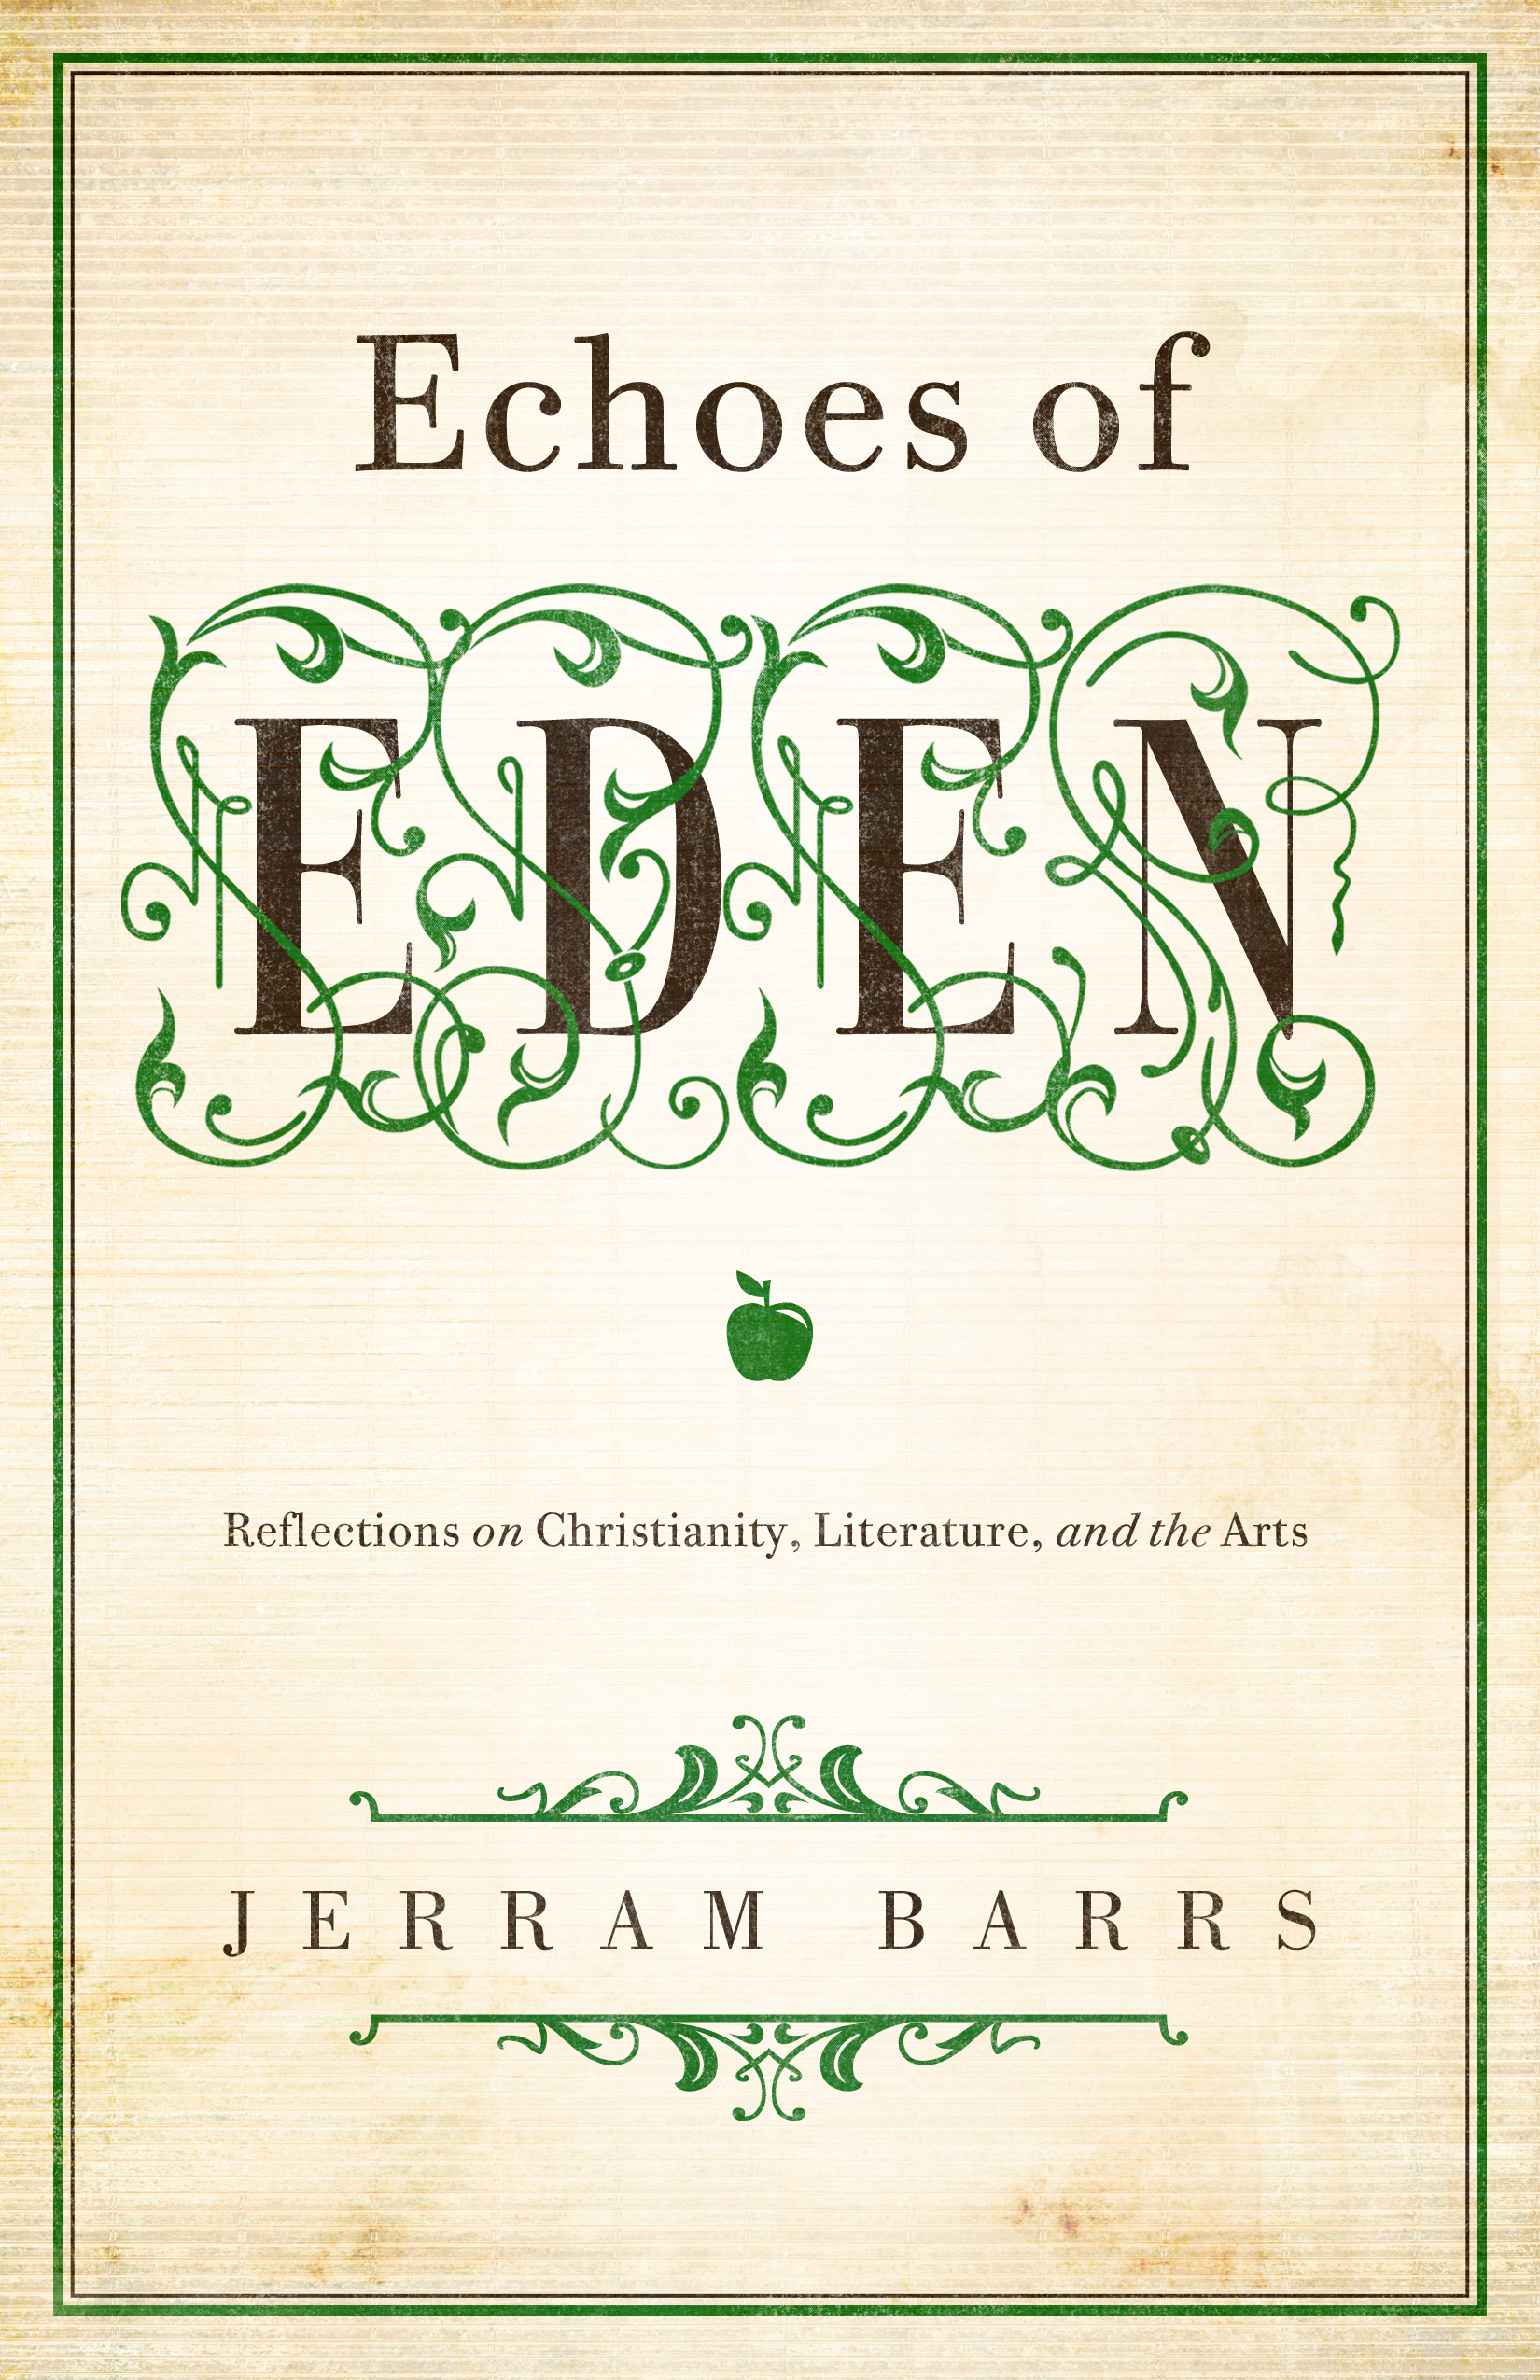 Echoes of Eden